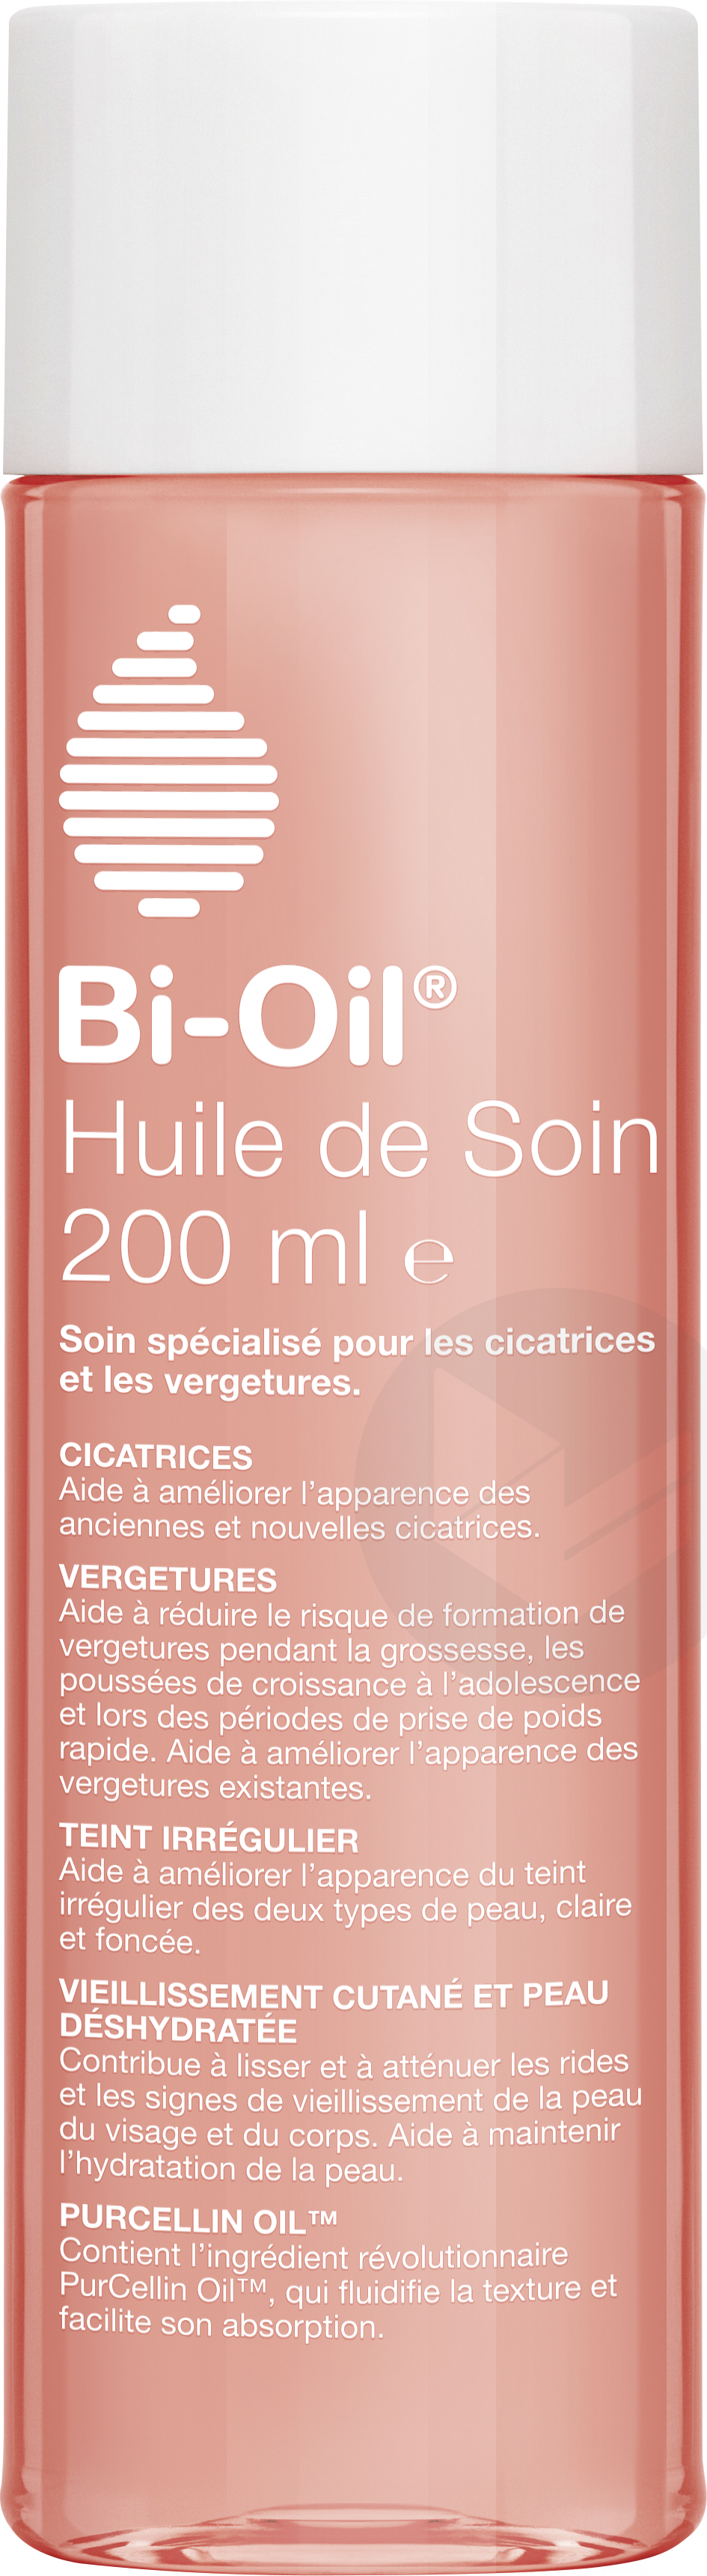 Bi-Oil Huile 200ml